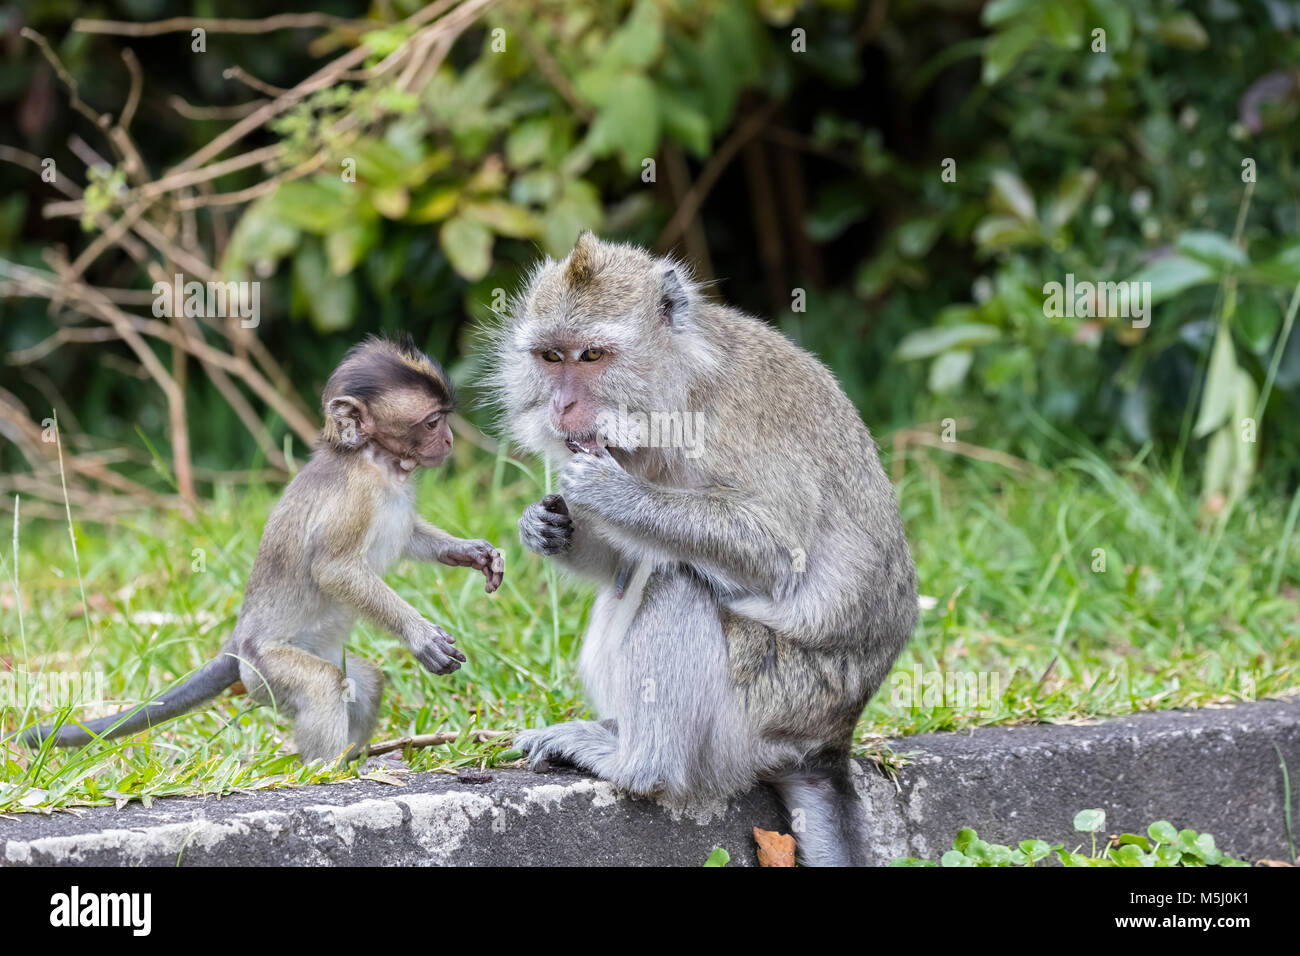 Mauricio, Parque Nacional Black River Gorges, larga cola macaco, macacos de cola larga, madre joven animal Foto de stock